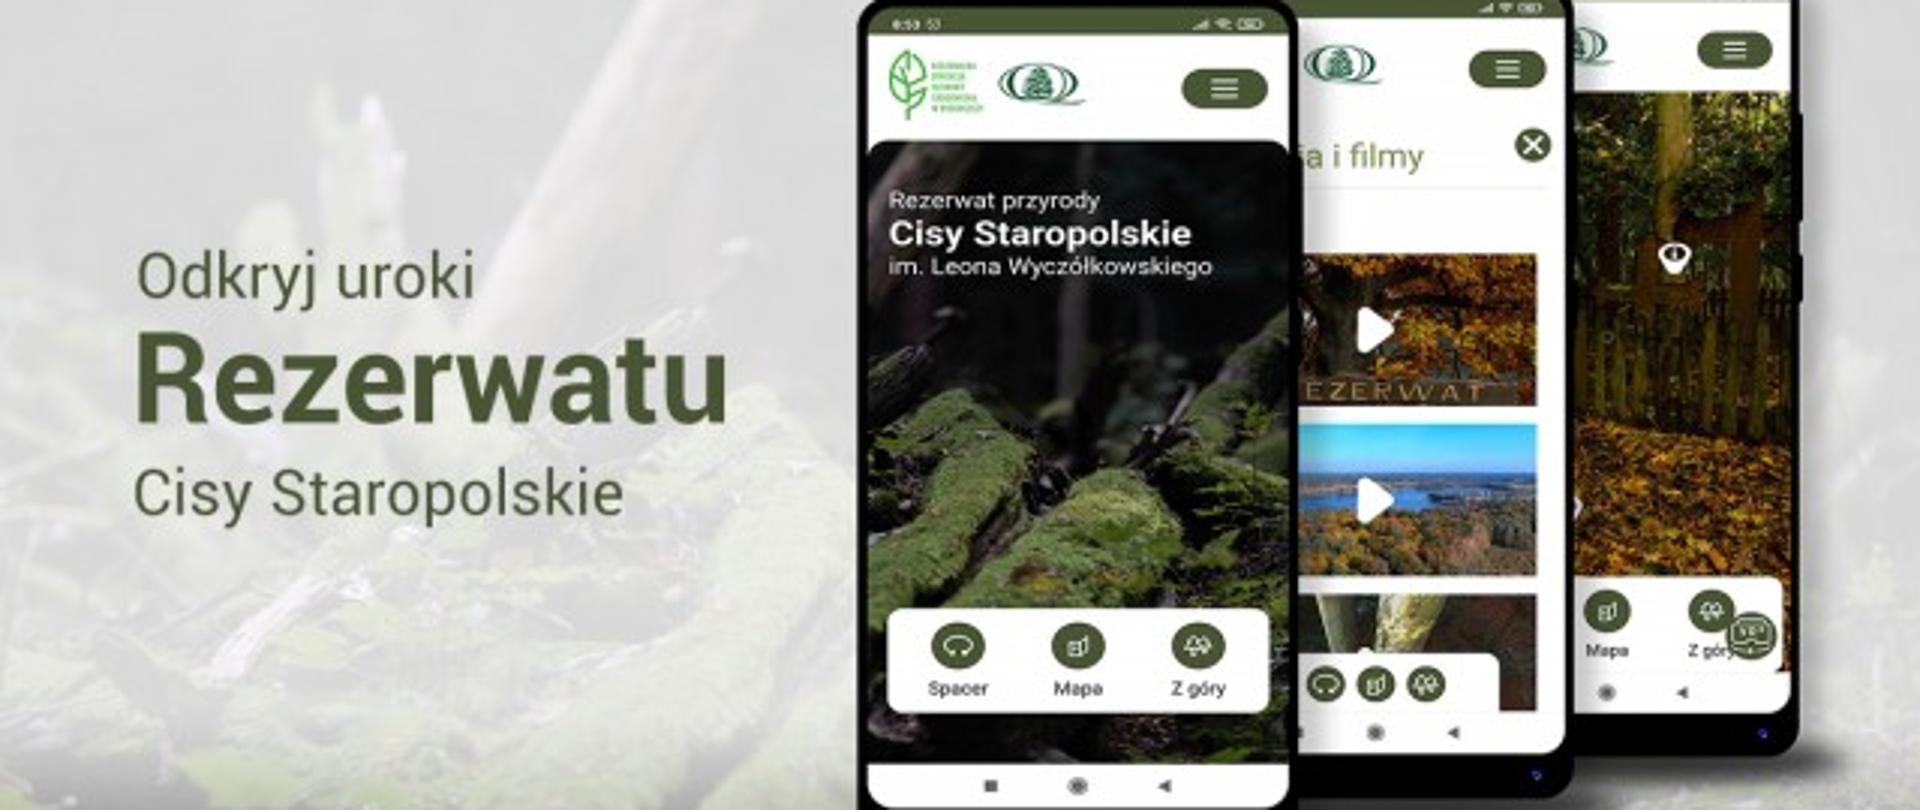 Odkryj uroki Rezerwatu Cisy Staropolskie - zdjęcie telefonów z aplikacją